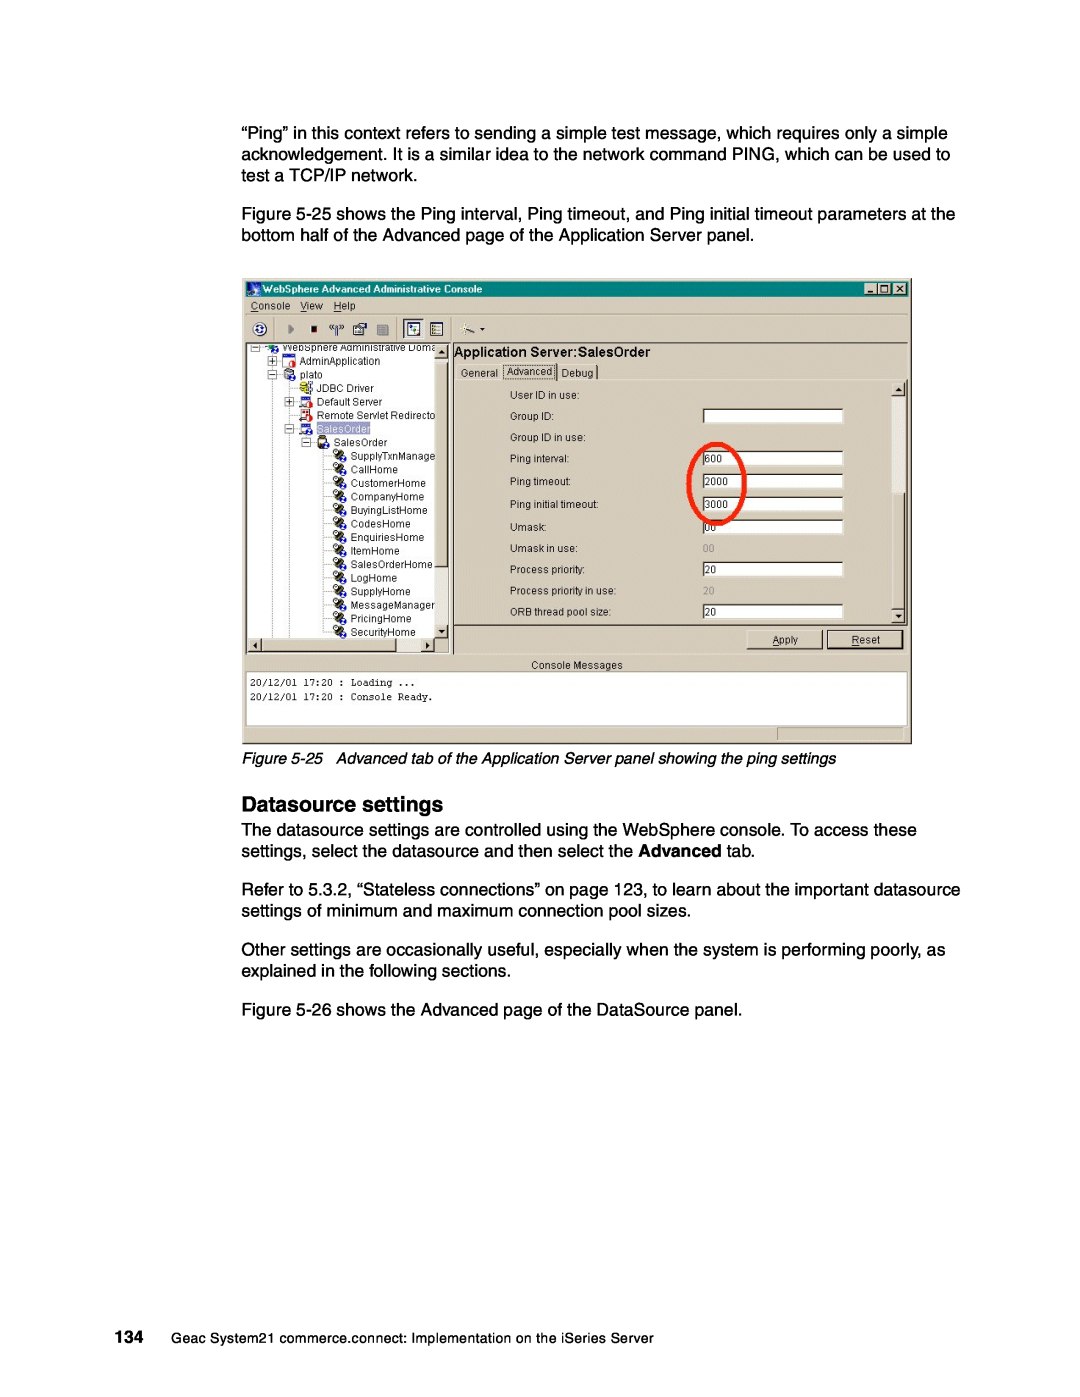 IBM SG24-6526-00 manual Datasource settings 